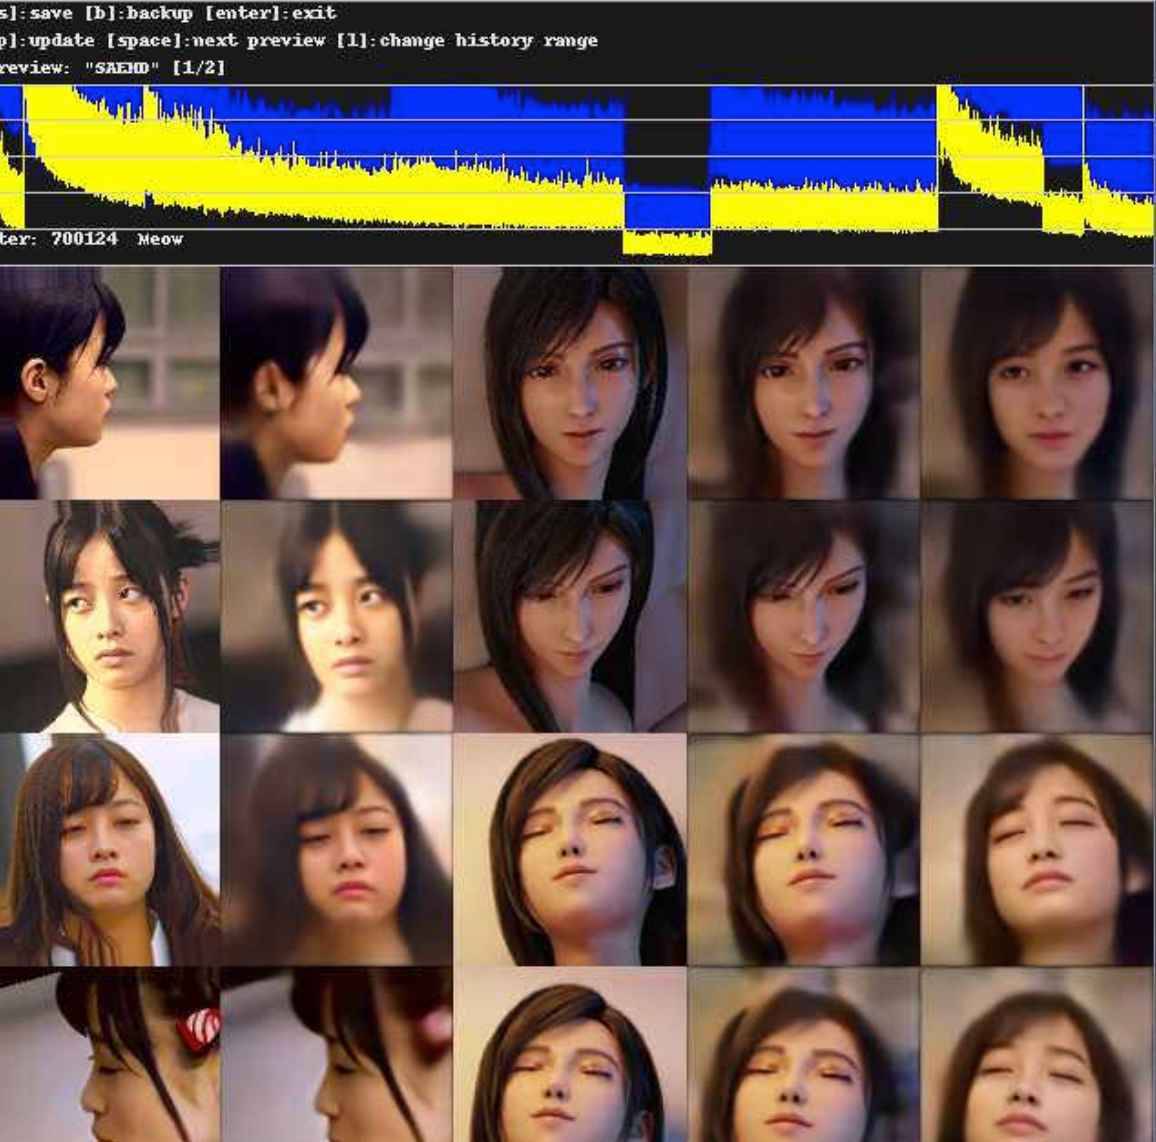 Deepfacelab日本美少女桥本环奈70w模型+11000人脸切片分享